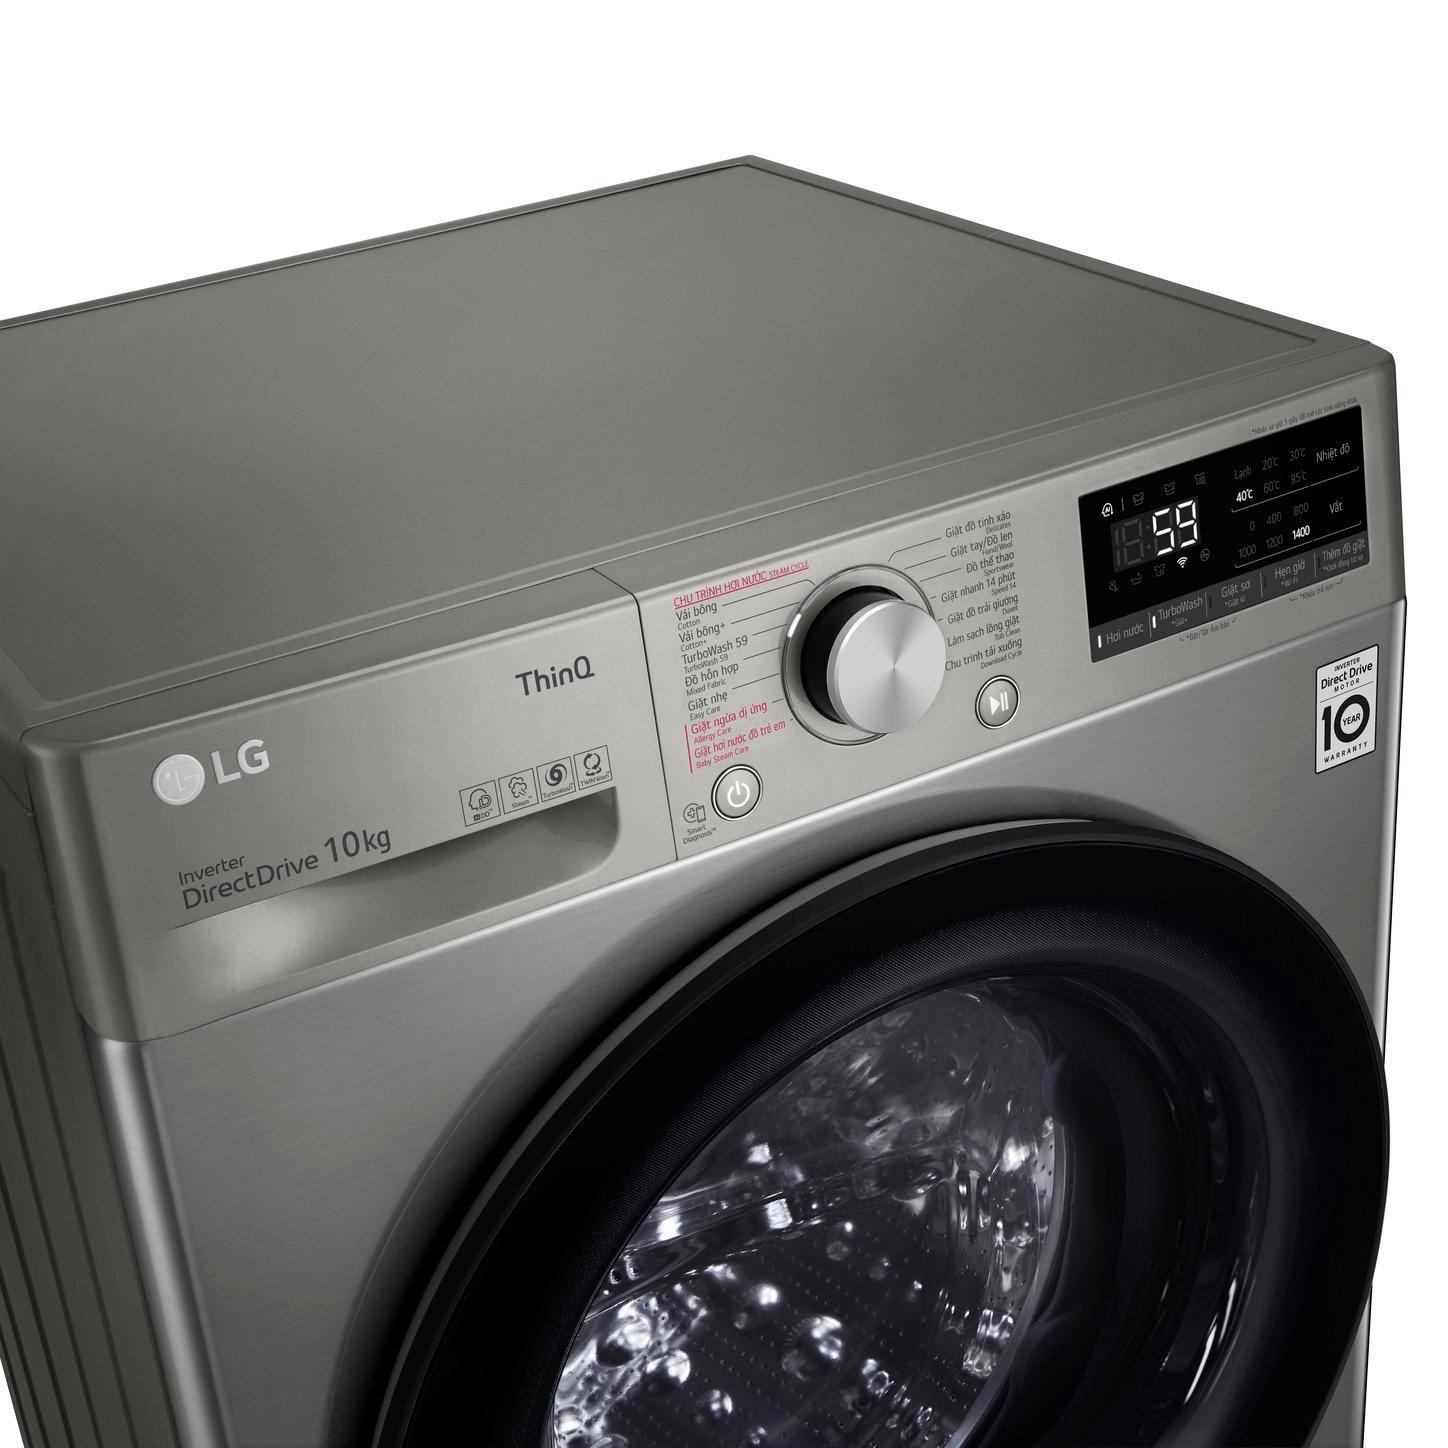 Máy giặt lồng ngang thông minh LG AI DD 11kg FV1411S4P - Hàng chính hãng (chỉ giao HN và một số khu vực)